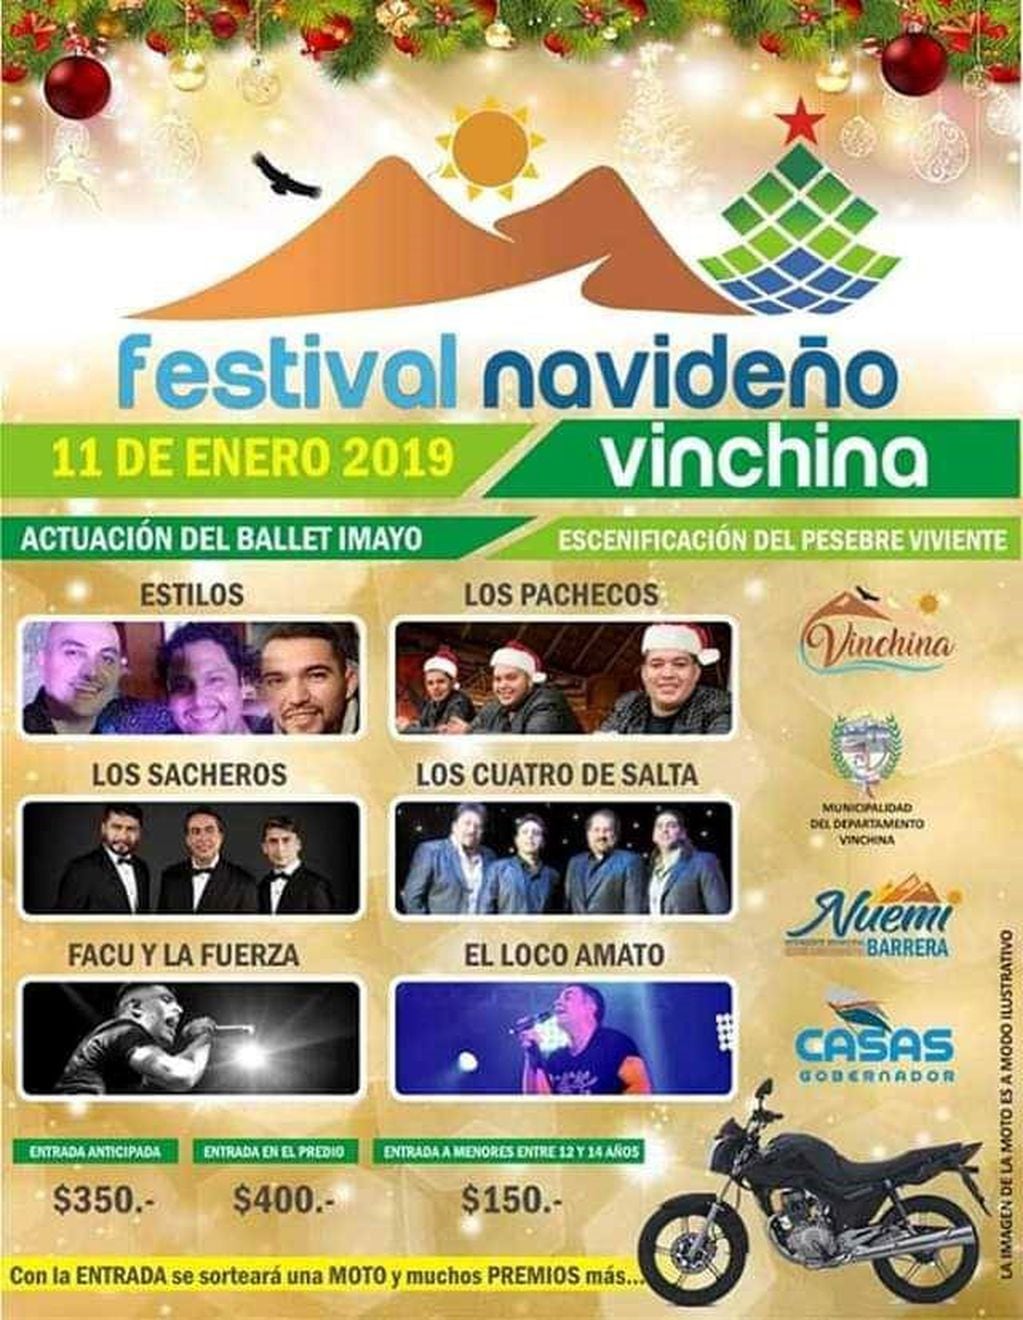 Esta noche se realizará el Festival Navideño en Vinchina